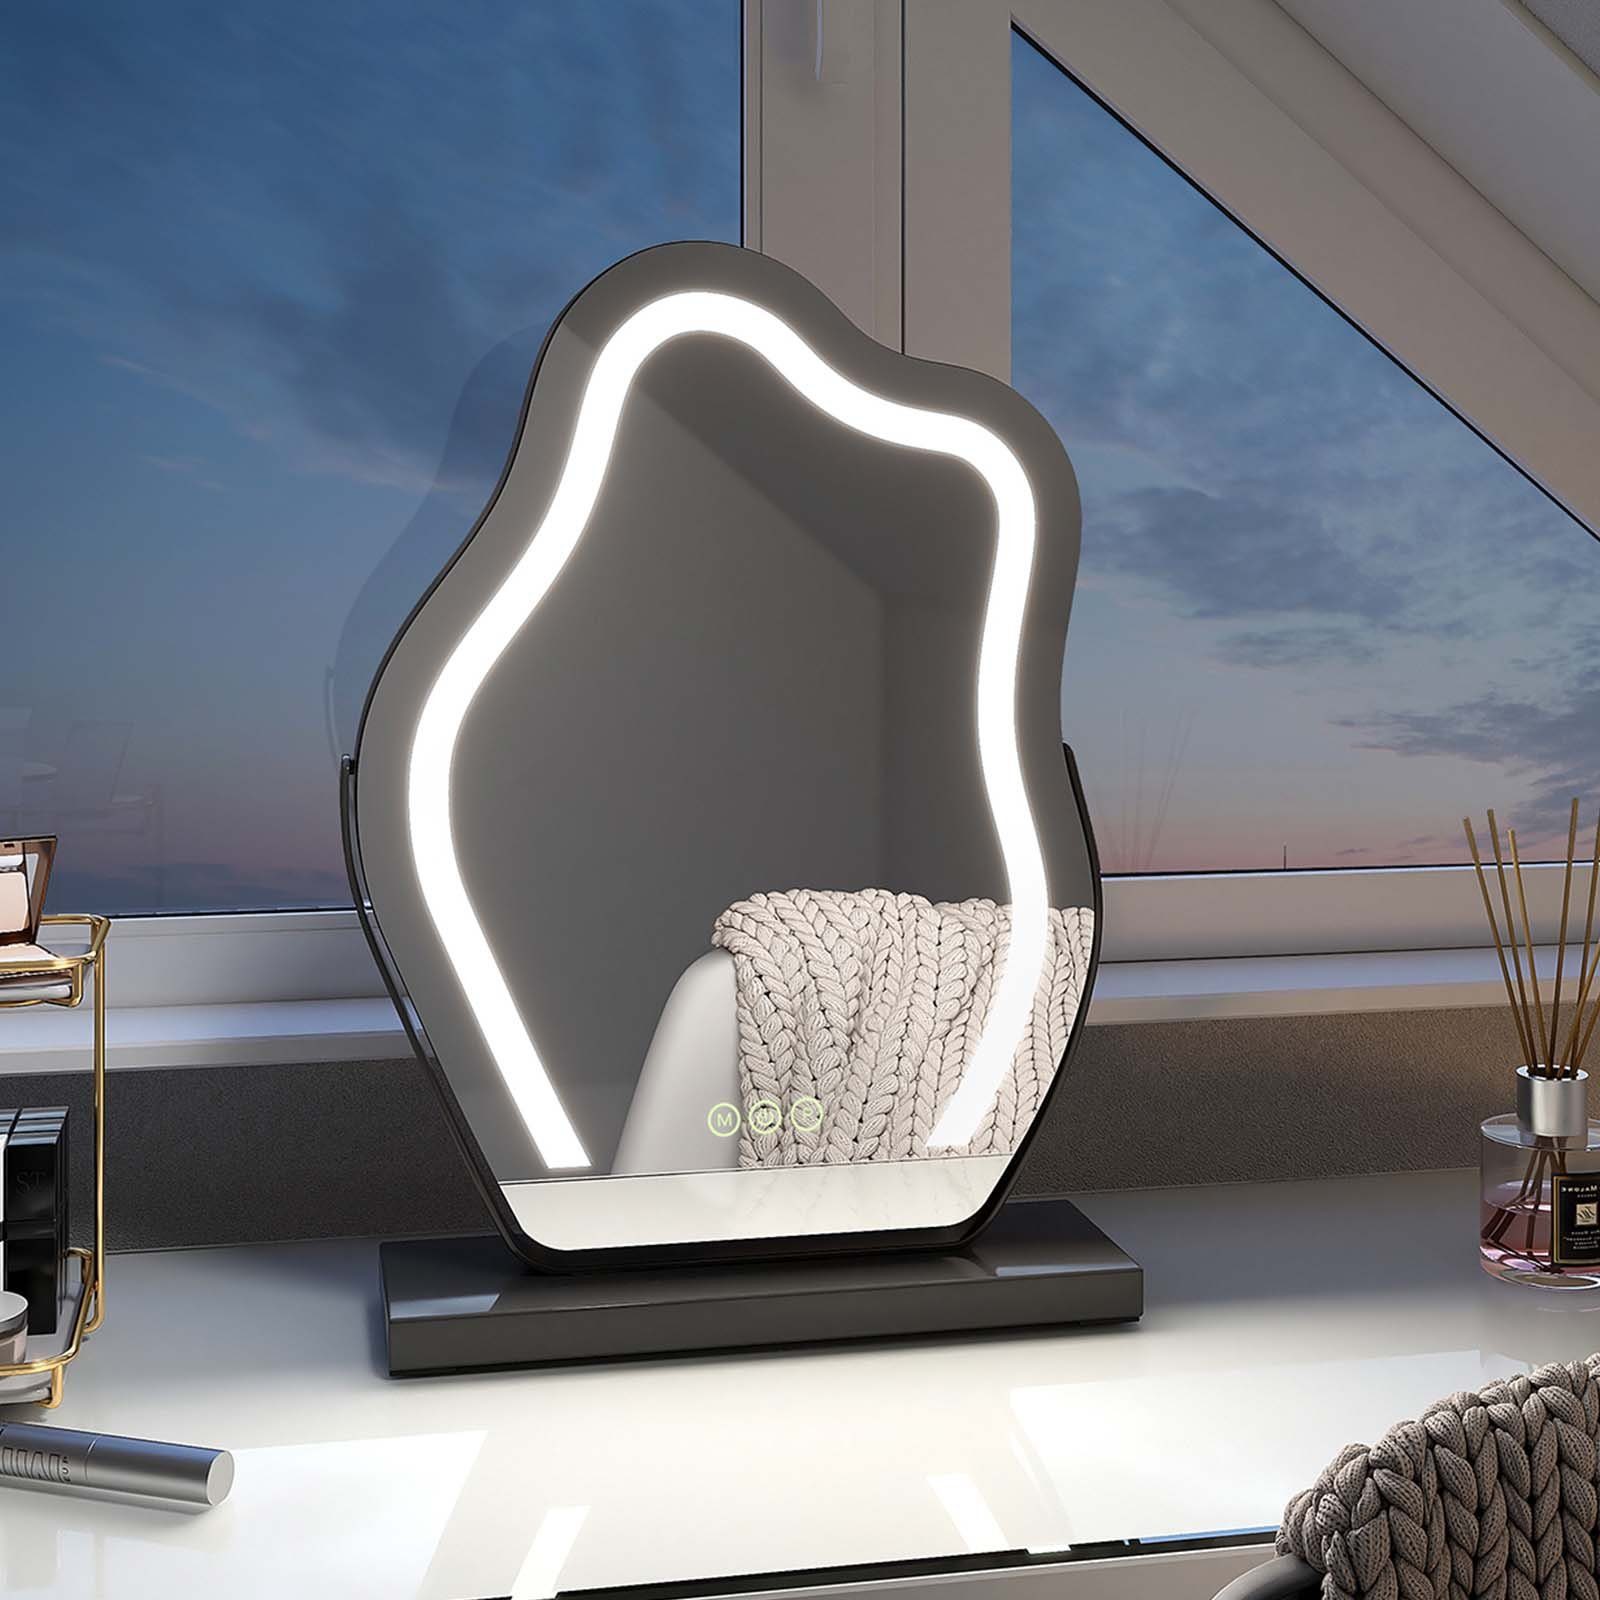 EMKE Schminkspiegel mit Beleuchtung Unregelmäßige Kurve Kosmetikspiegel 360° Drehbar, Touchschalter, 3 Lichtfarben Dimmbar und Memory-Funktion